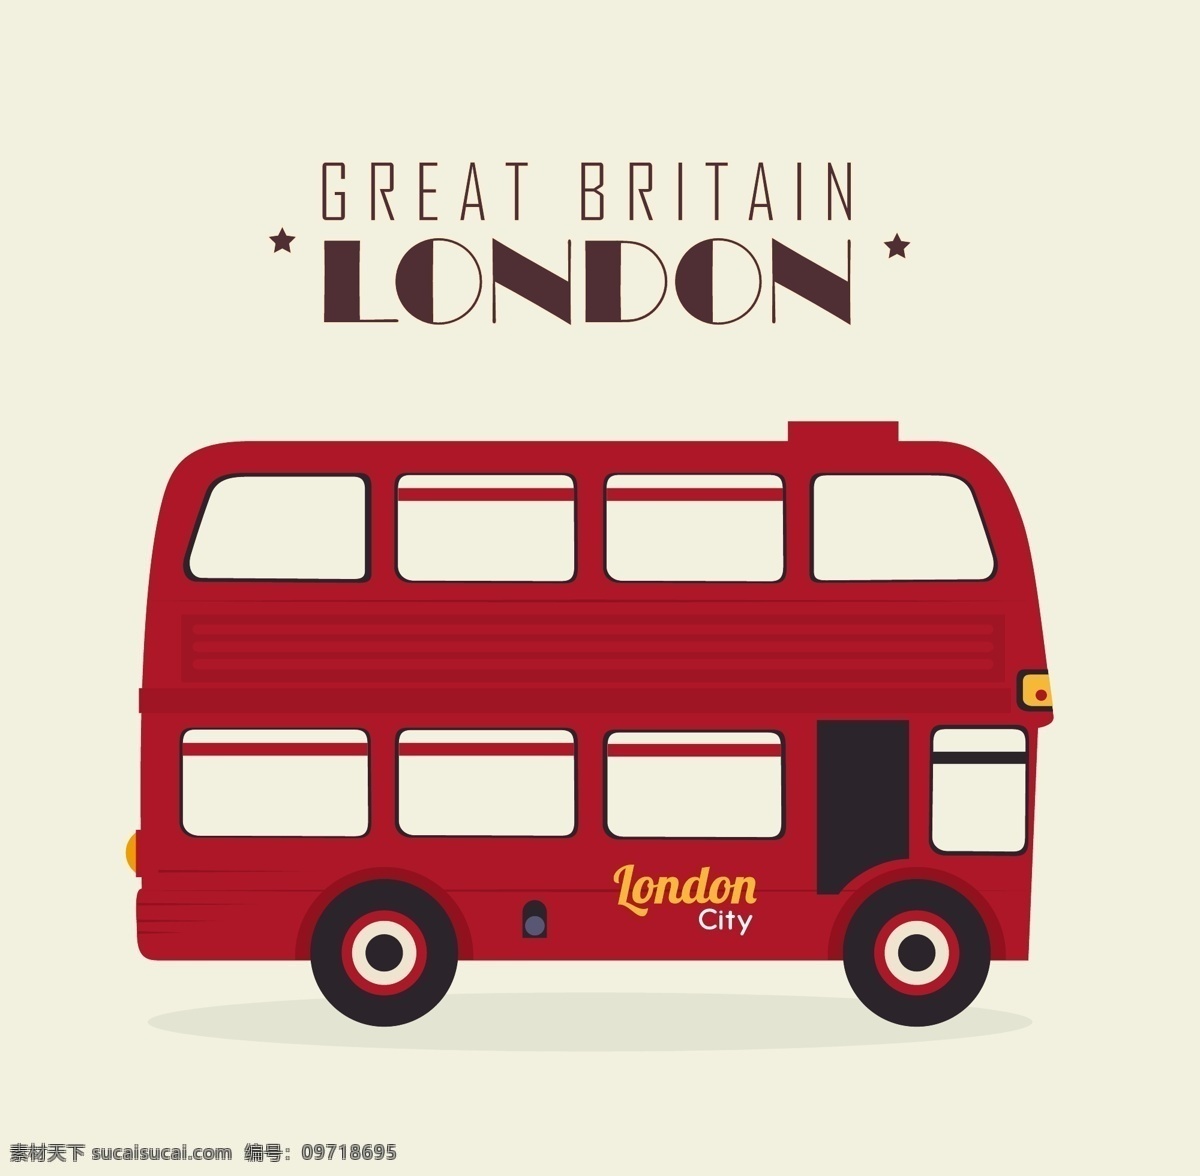 伦敦双层巴士 伦敦 双层巴士 旅游 英国 矢量图 eps格式 白色